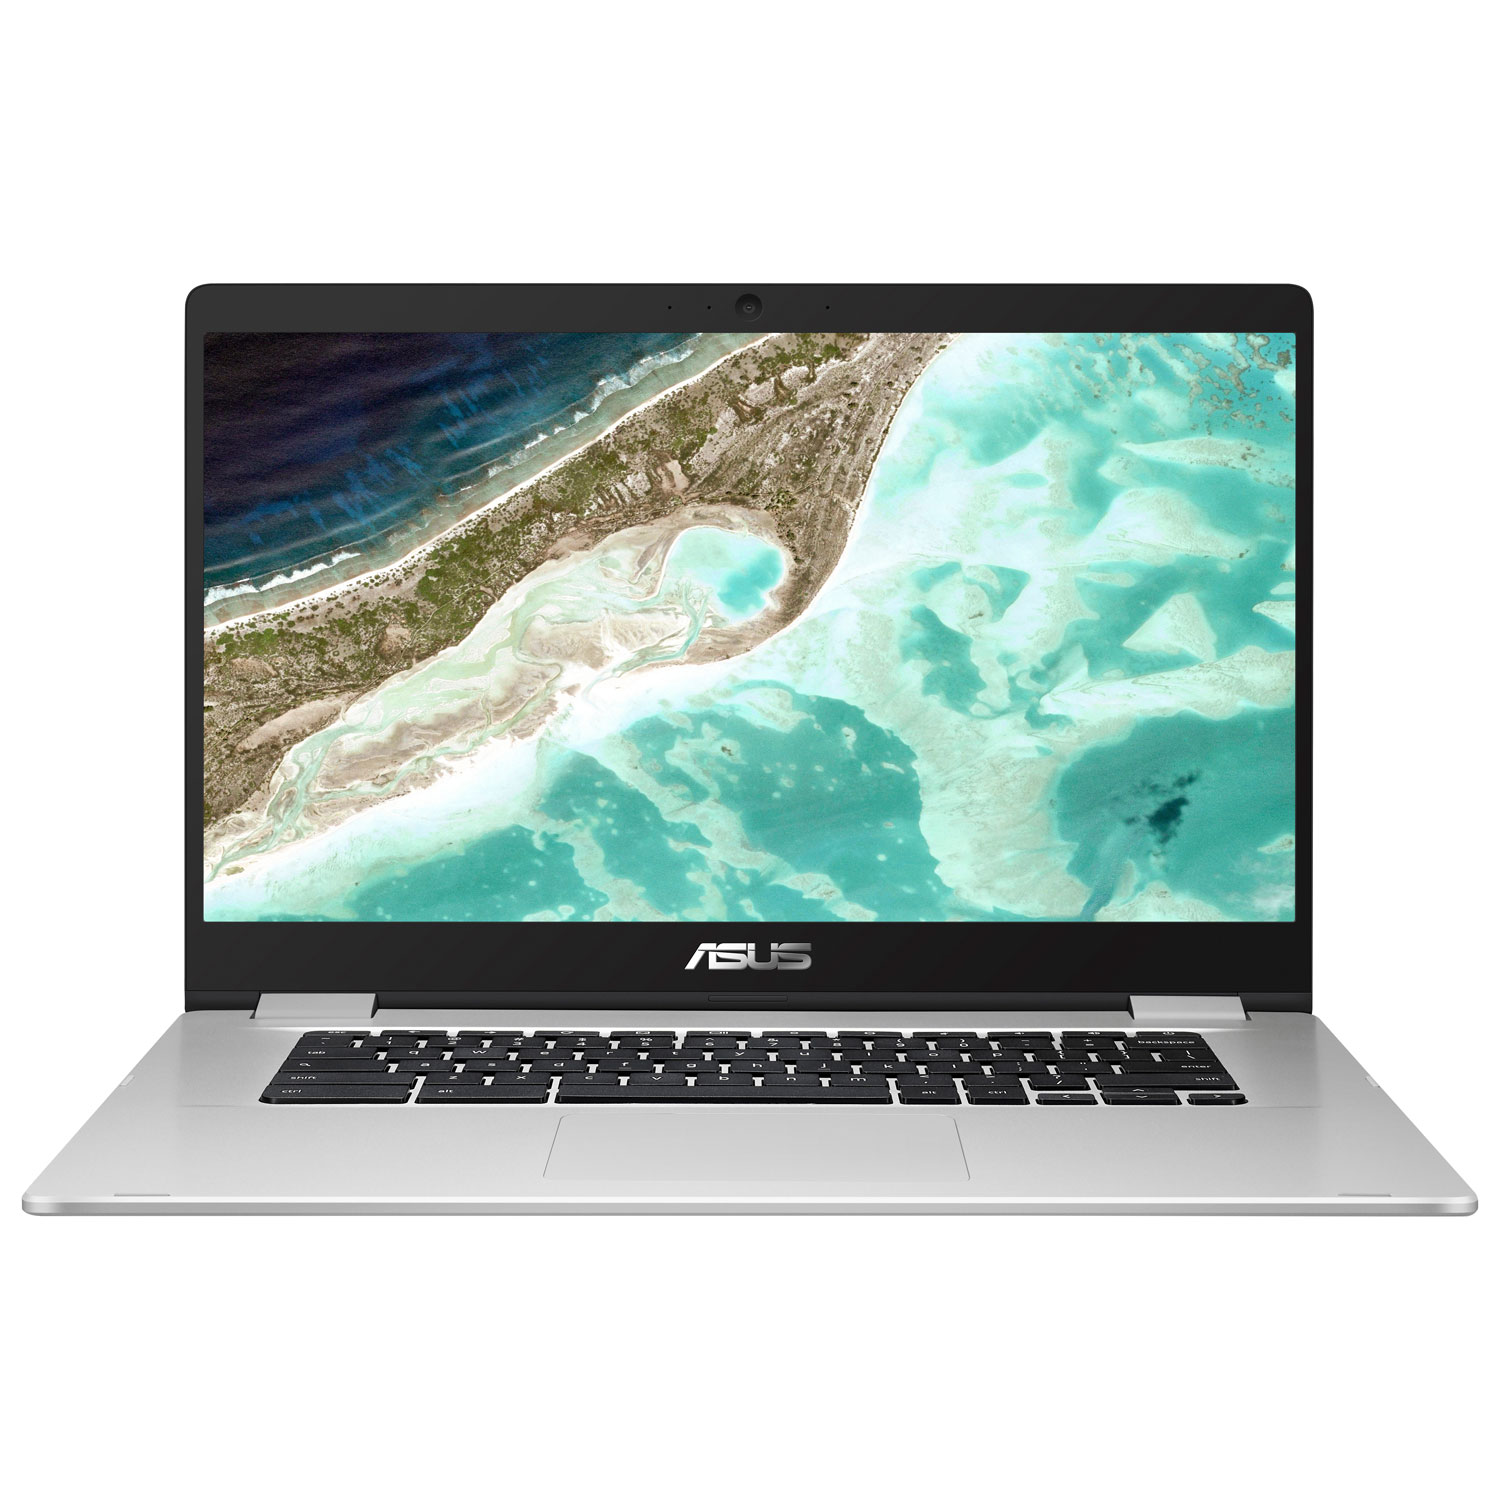 ASUS C523 15.6" Chromebook - Silver (Intel Celeron N3350/64GB eMMC/4GB RAM/Chrome OS)